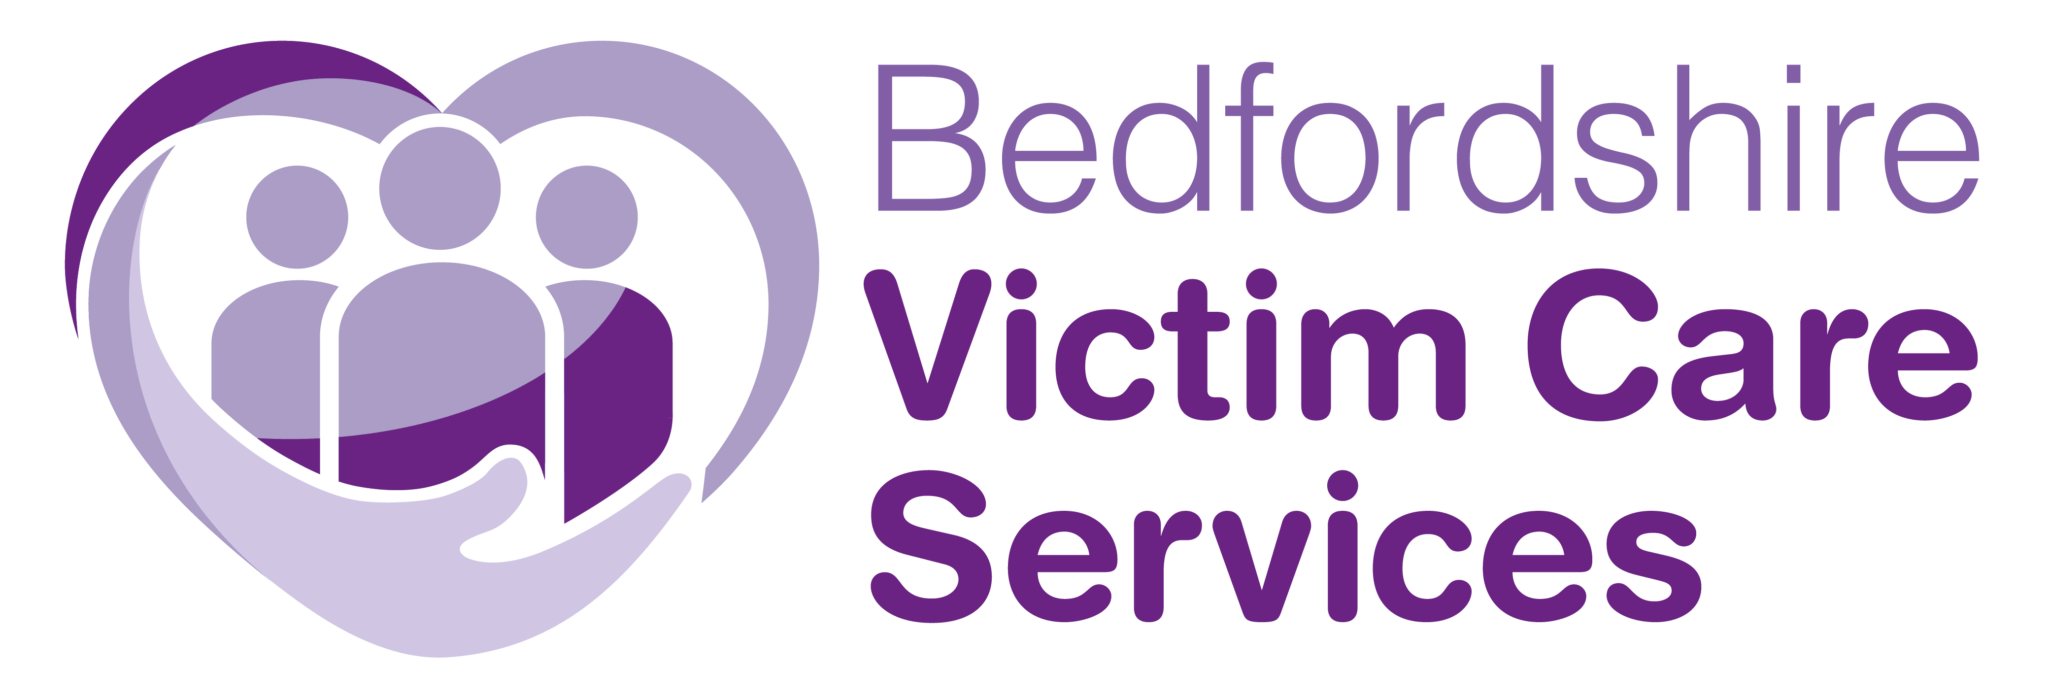 Bedfordshire Victim Care Services Bedfordshire Pcc